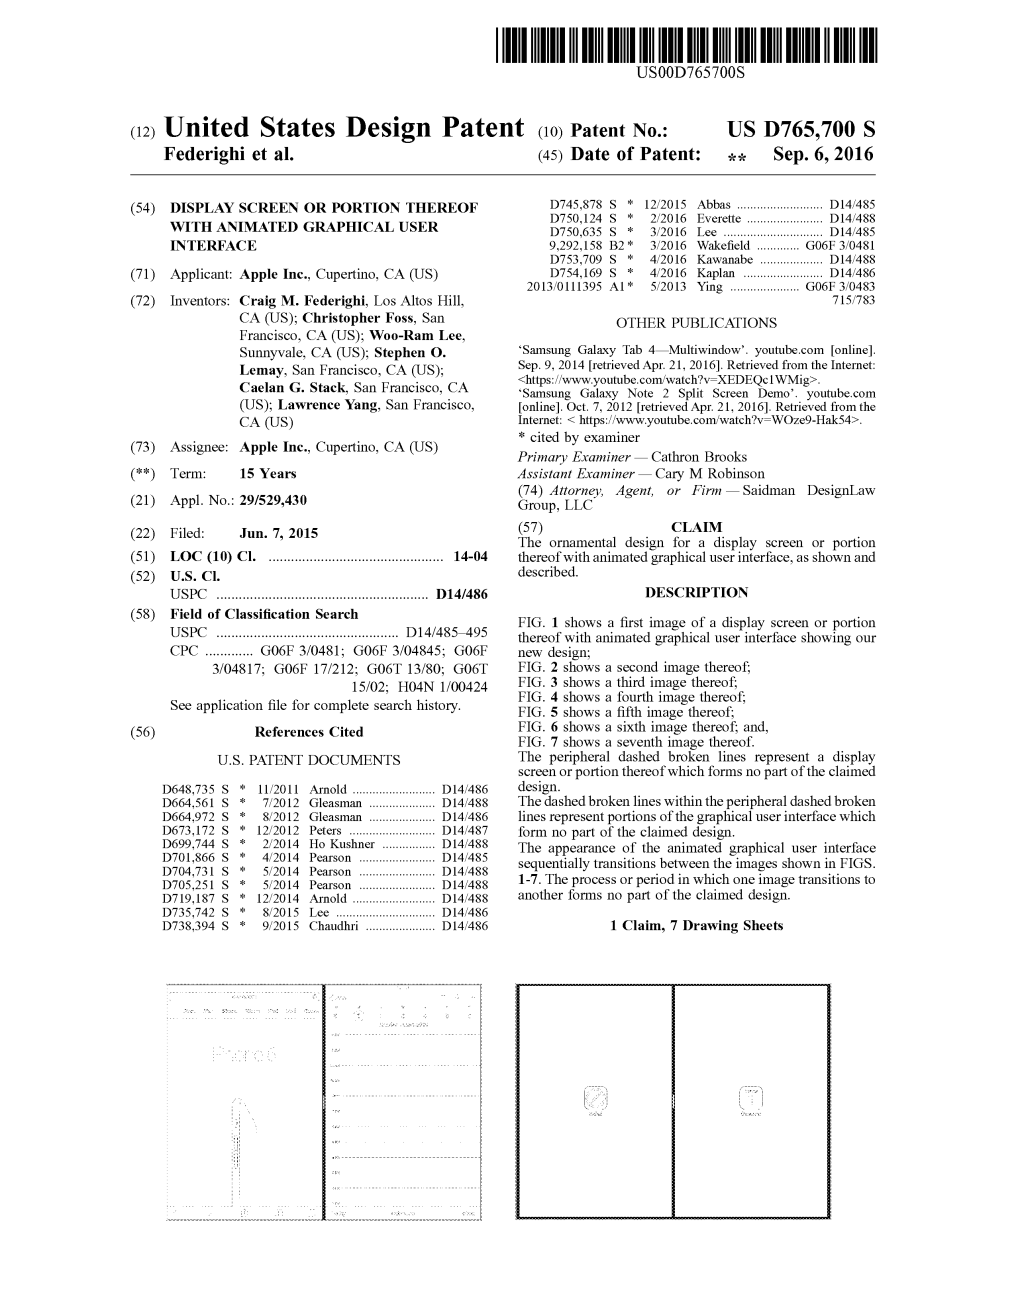 (12) United States Design Patent (10) Patent No.: US D765,700S Federighi Et Al